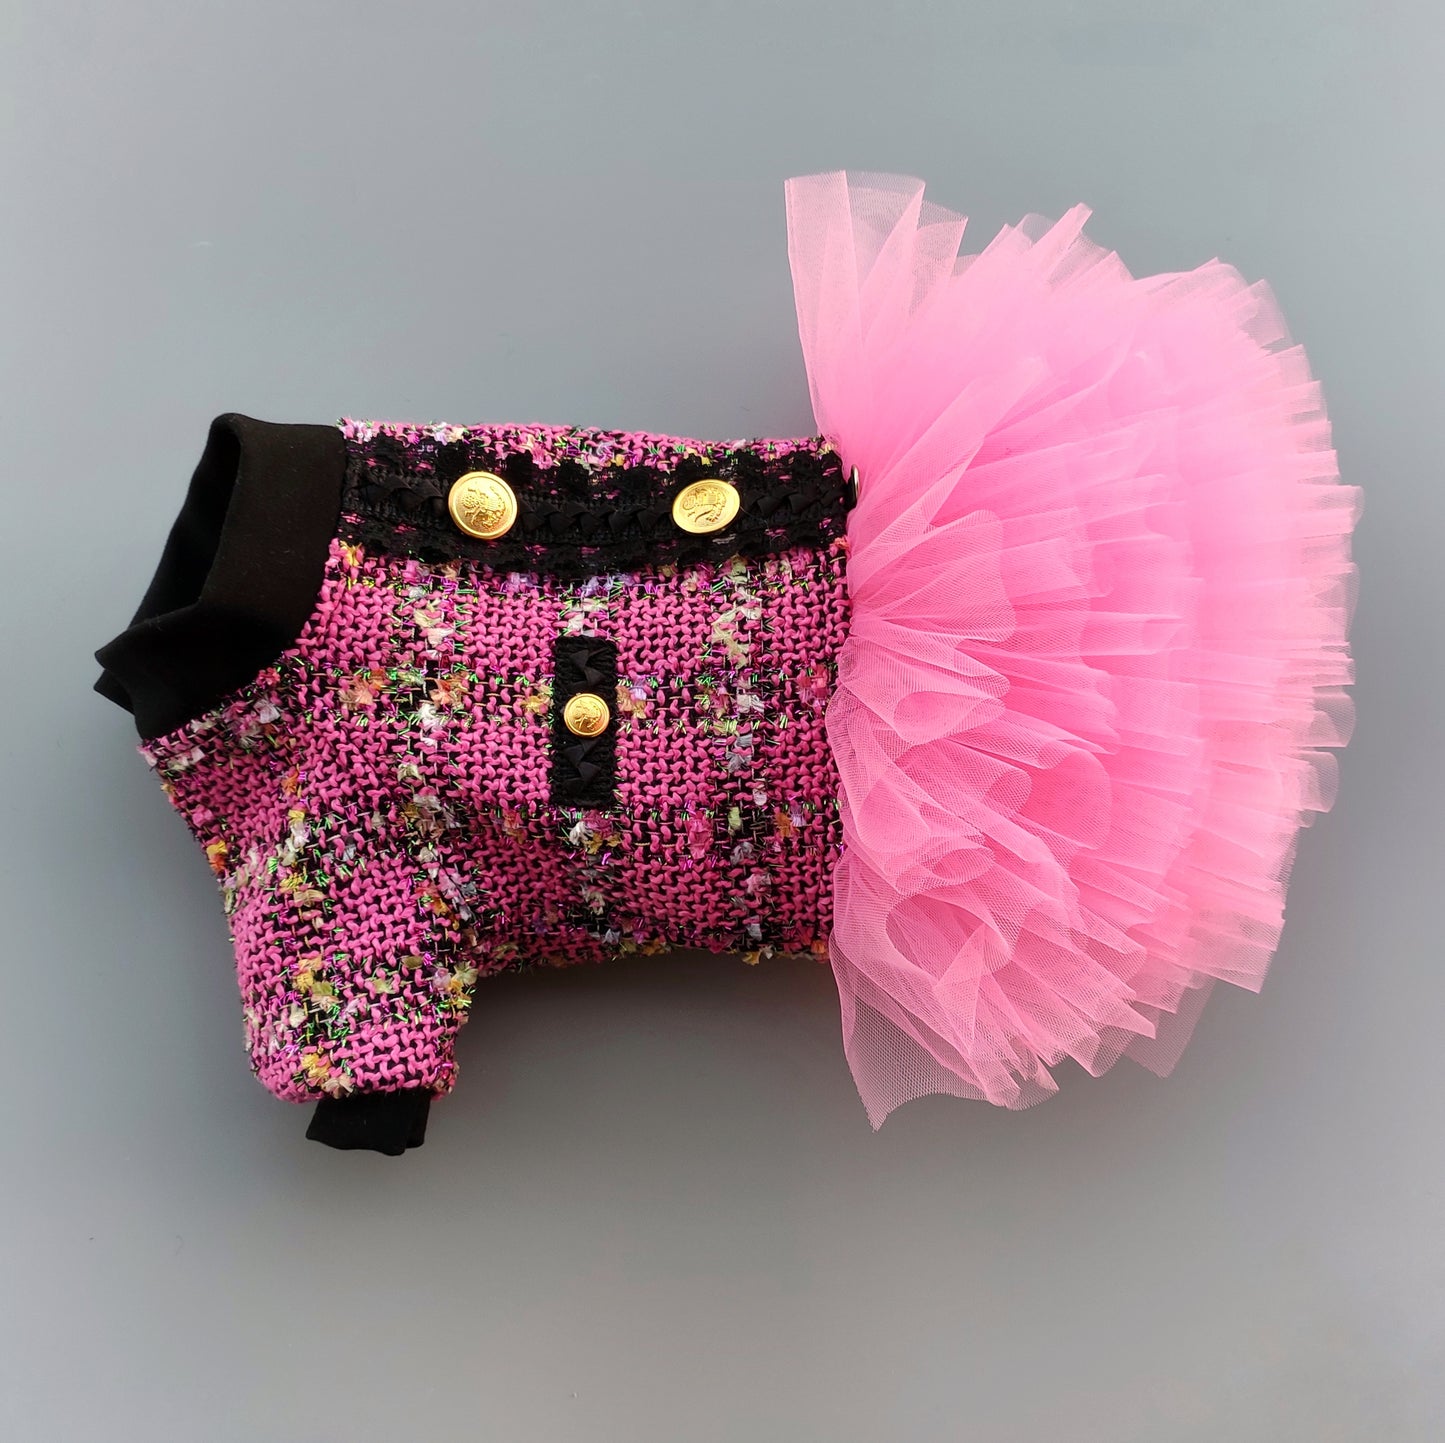 Stylish pink tweed dog dress with tutu skirt